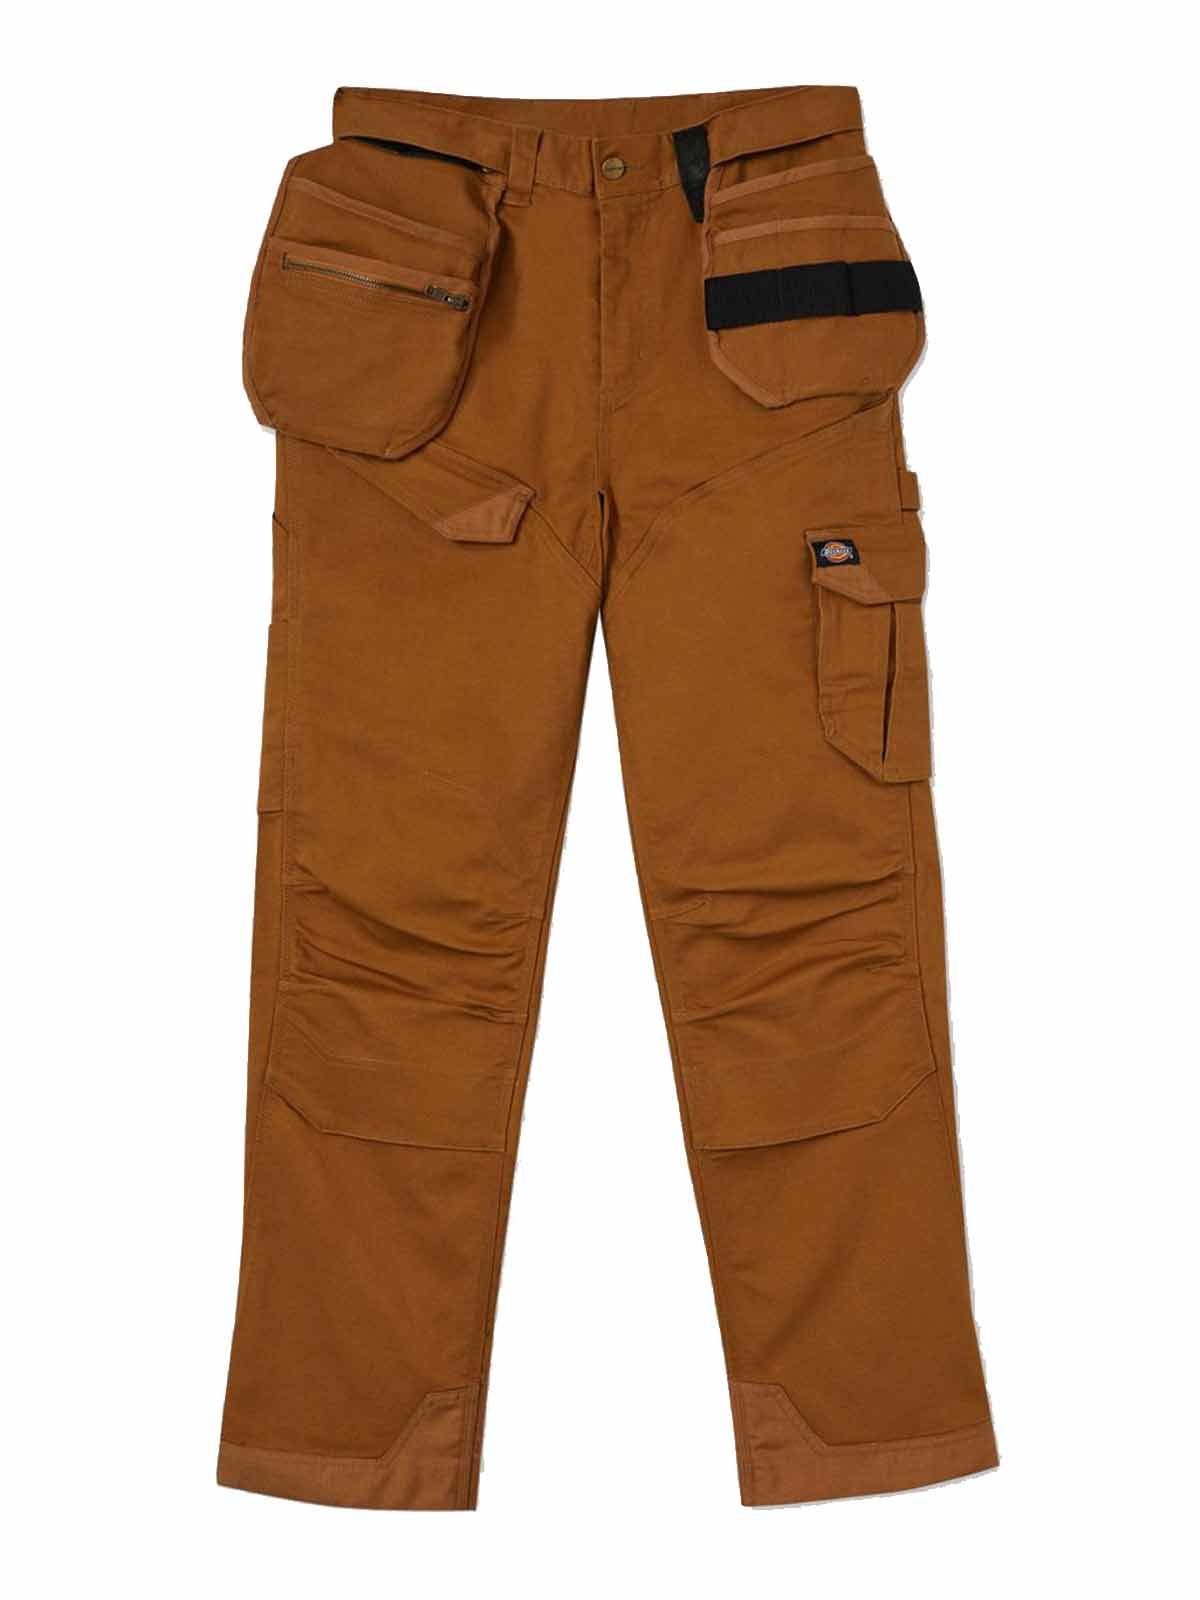 Buy Dickies Mens Flex Duck Carpenter Pants Slim Fit Duck Brown 34W x  30L at Amazonin